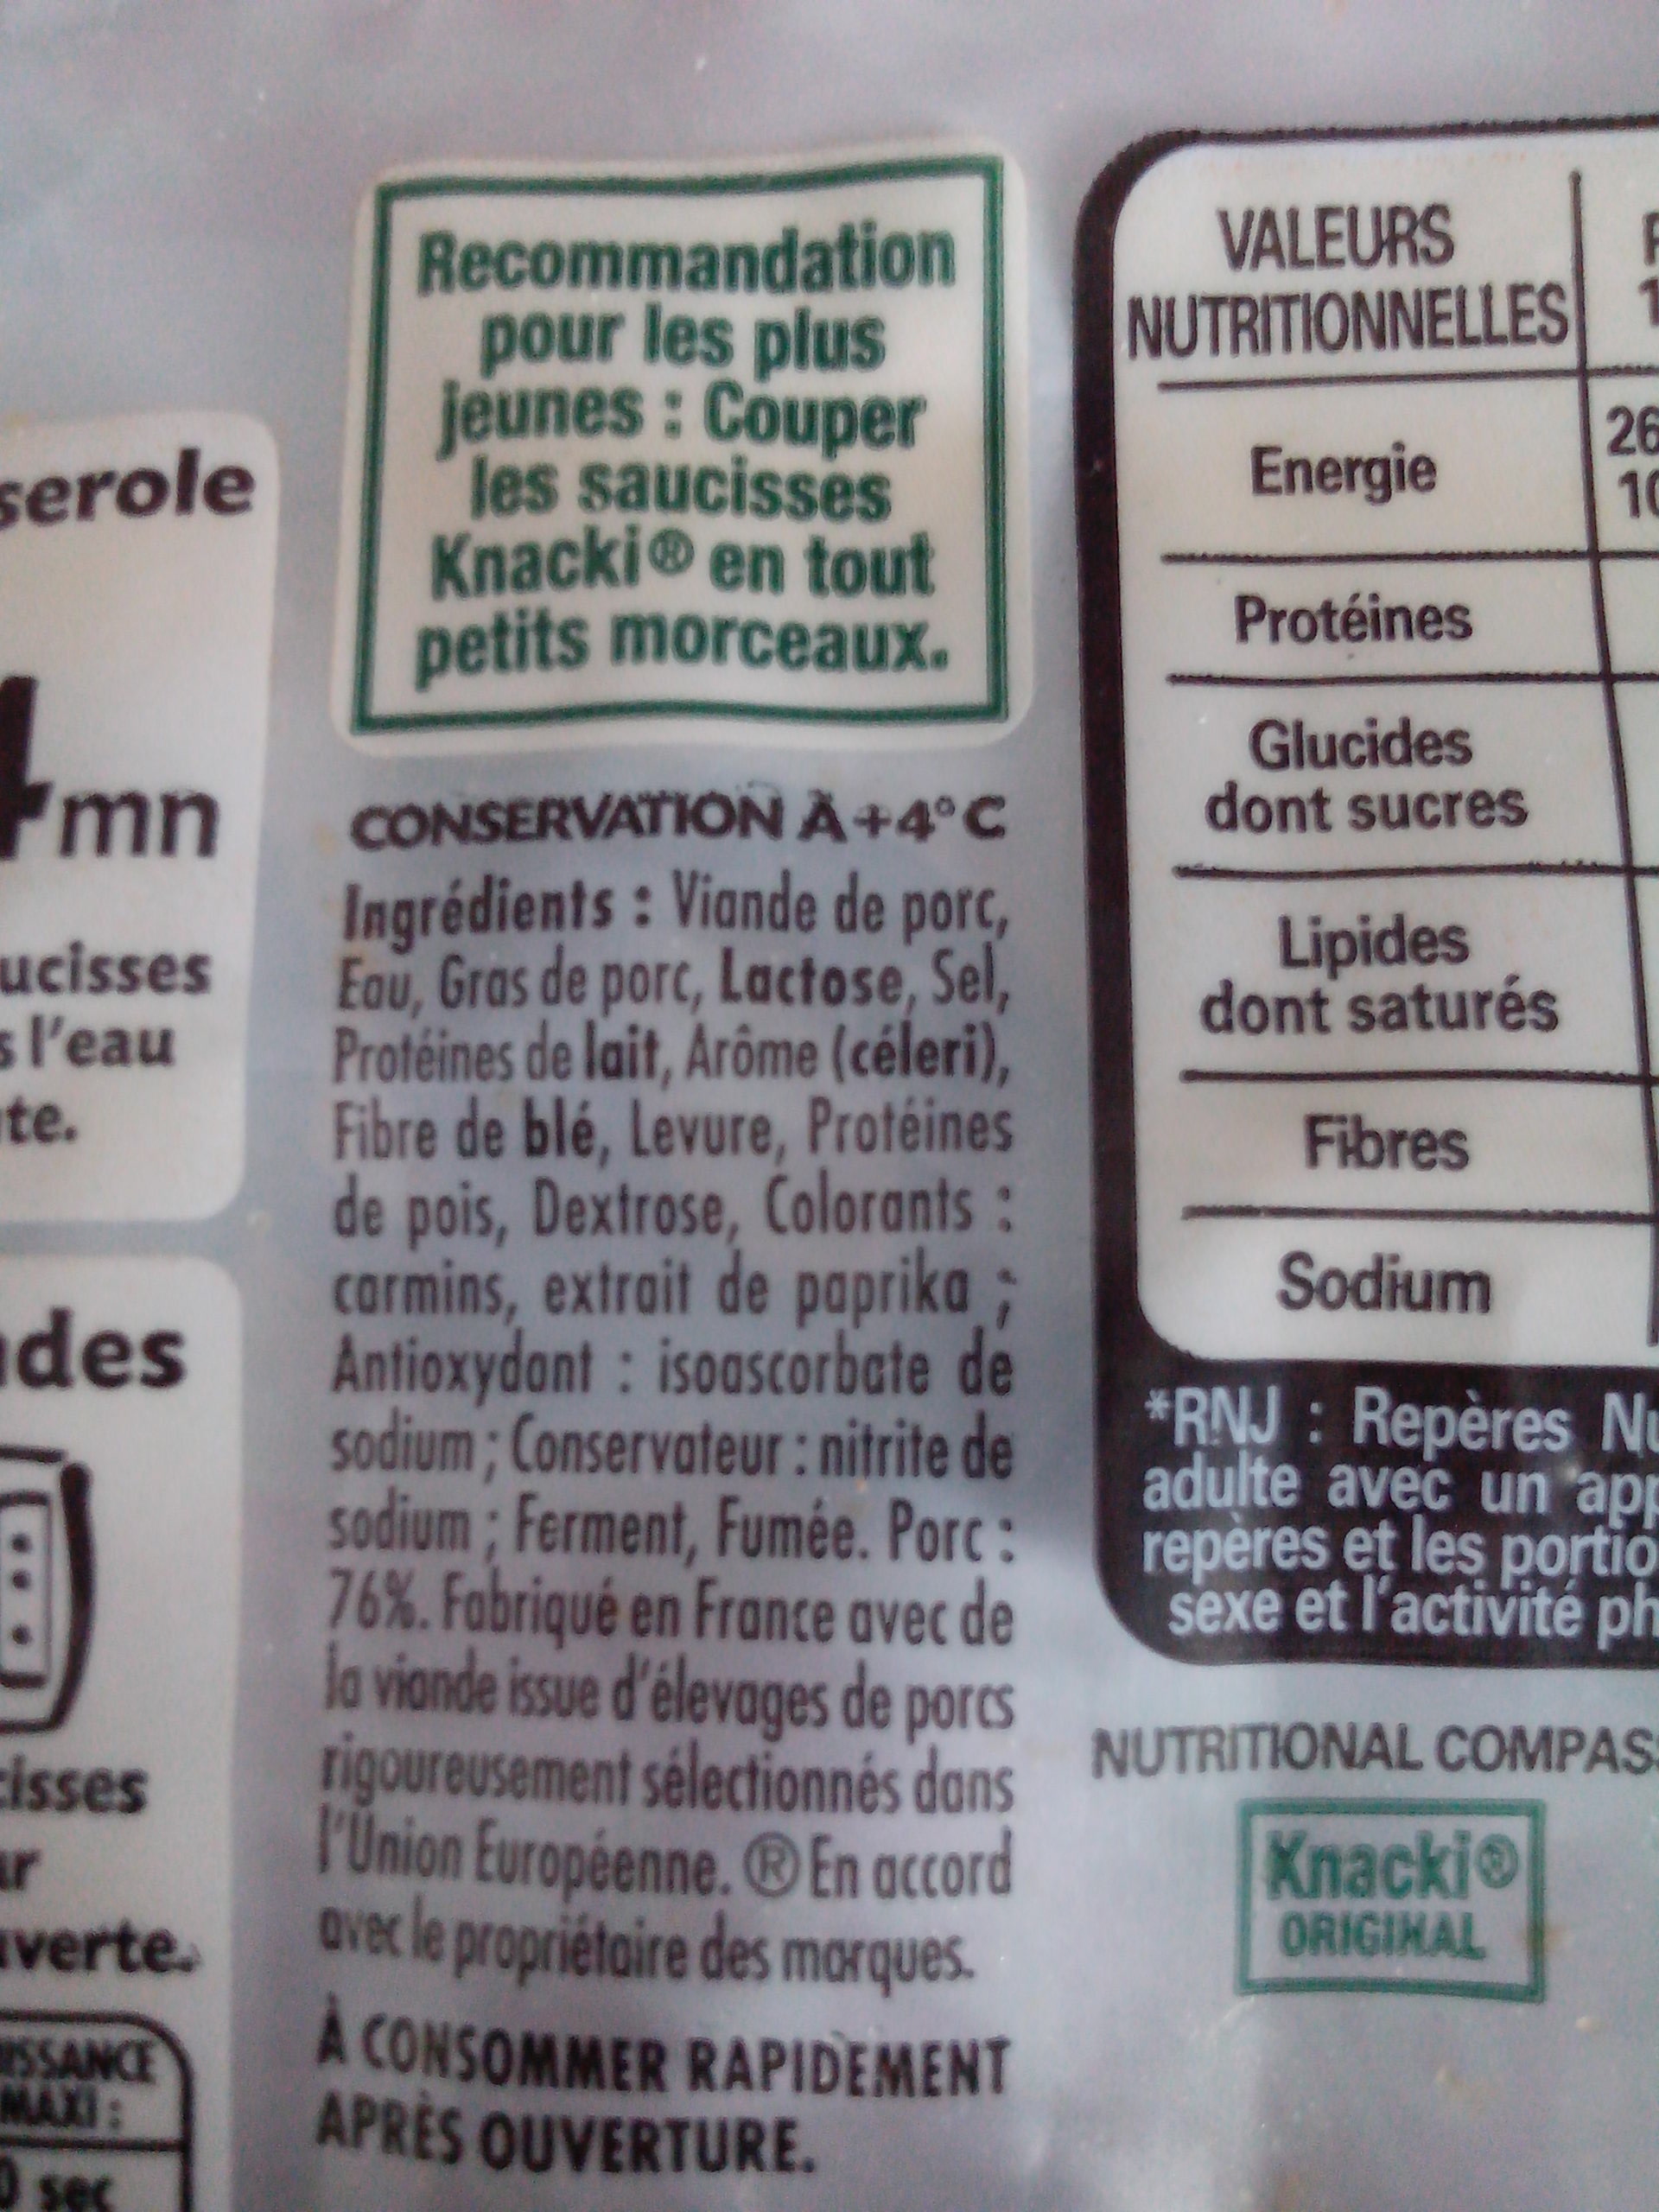 Knacki - 100% pur porc - Saucisses de Strasbourg - Ingrédients